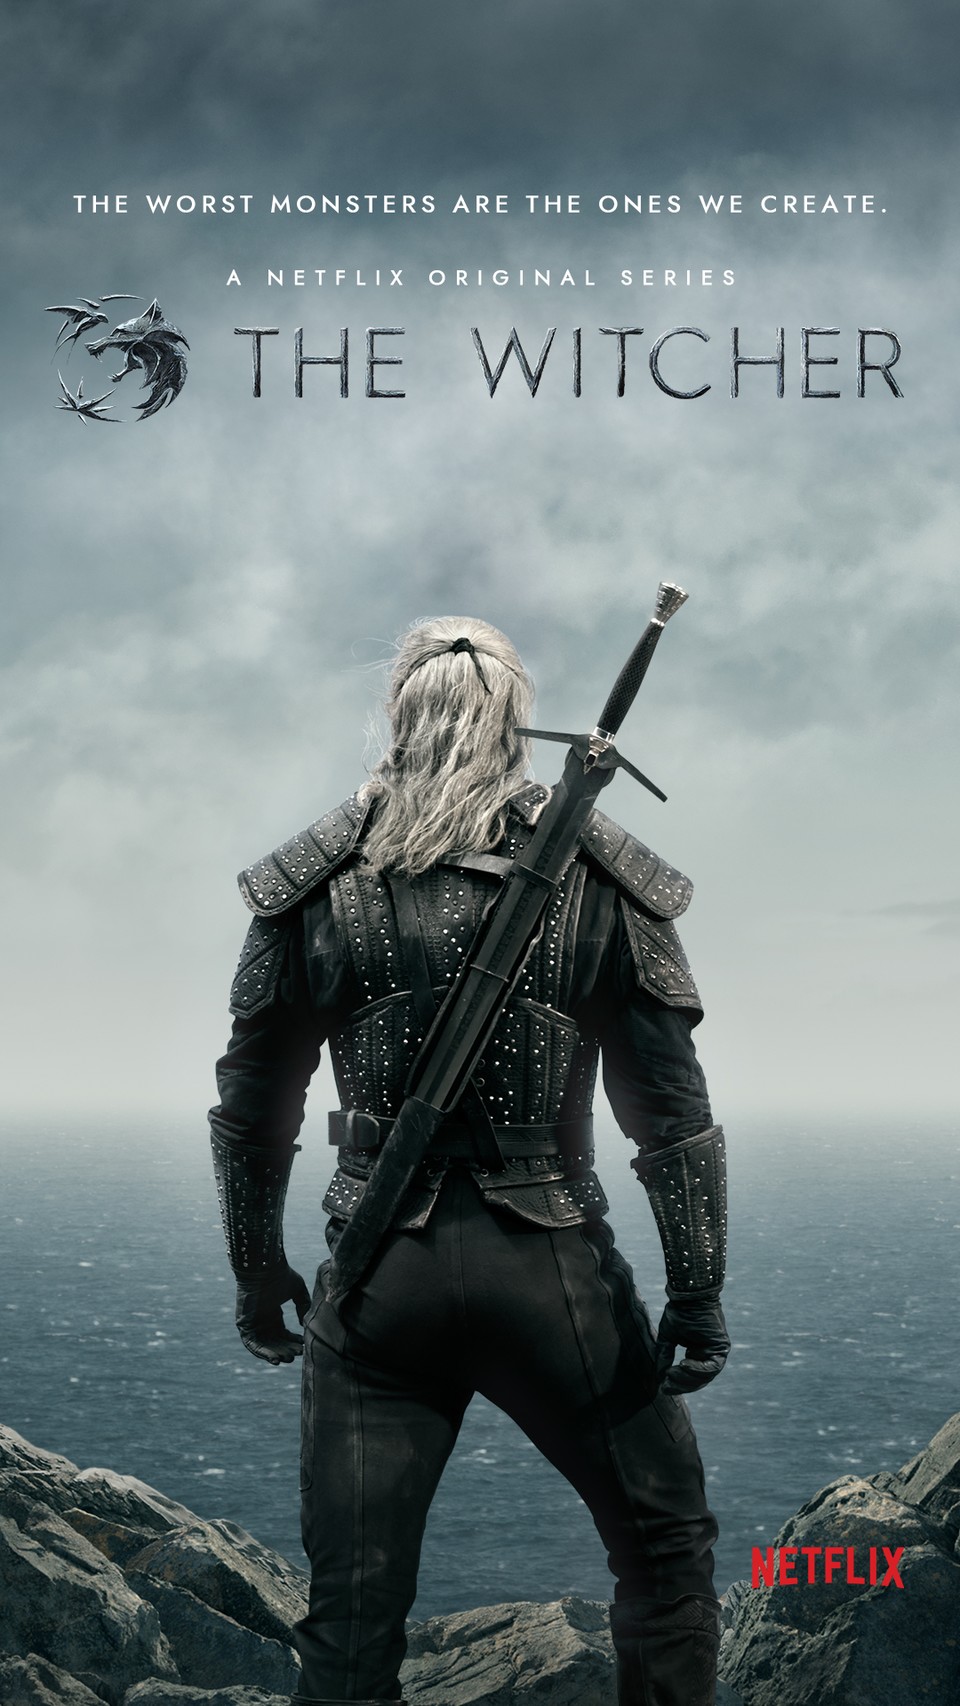 Das offizielle Plakat zur The-Witcher-Serie auf Netflix.